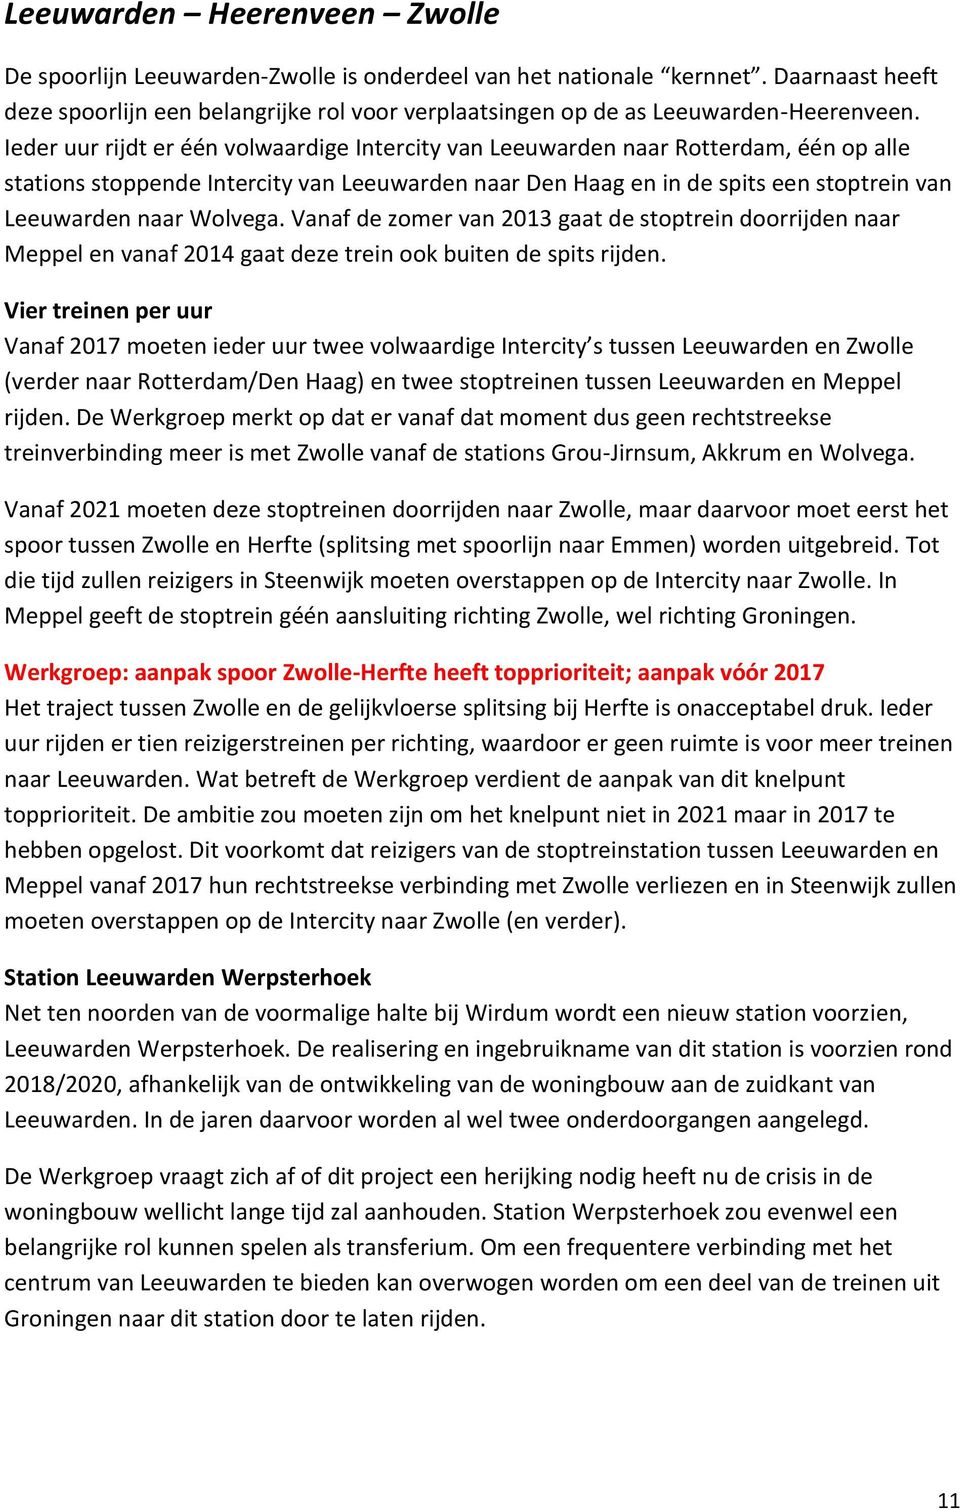 Ieder uur rijdt er één volwaardige Intercity van Leeuwarden naar Rotterdam, één op alle stations stoppende Intercity van Leeuwarden naar Den Haag en in de spits een stoptrein van Leeuwarden naar